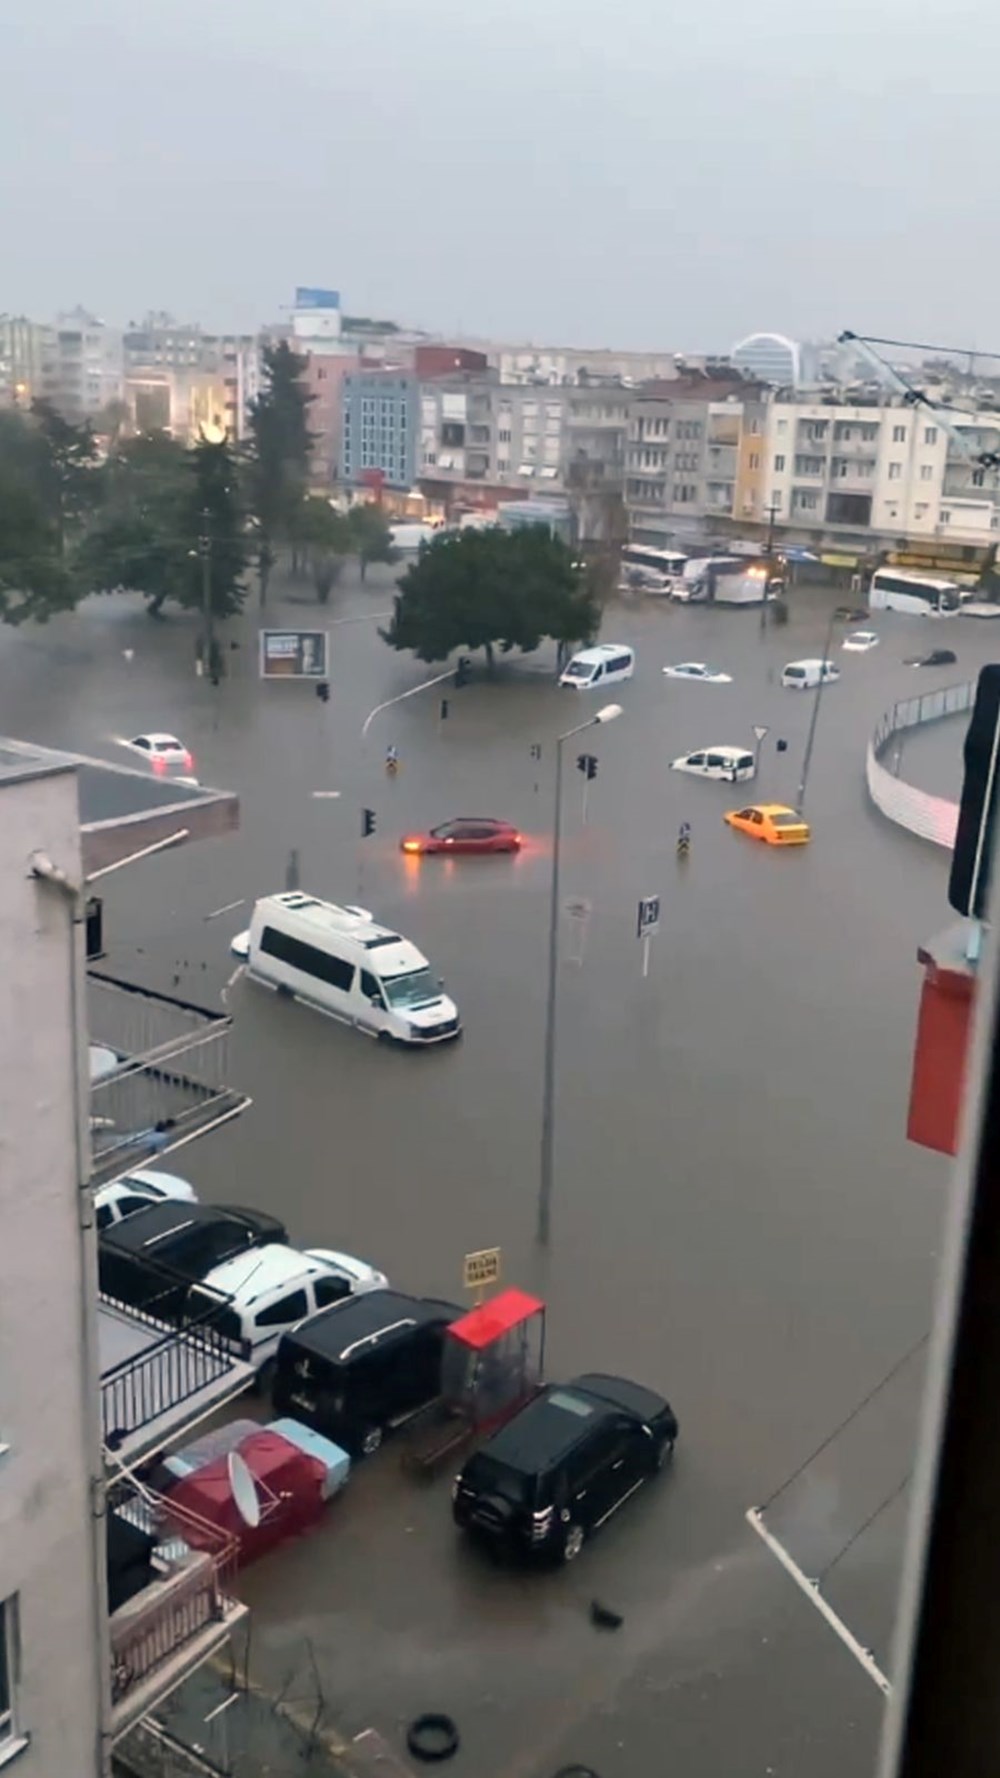 Antalya'da sel ve su baskını: 1 kişi yaşamını yitirdi, 6  ilçede eğitime ara verildi (4 şehir için turuncu kodlu uyarı) - 2